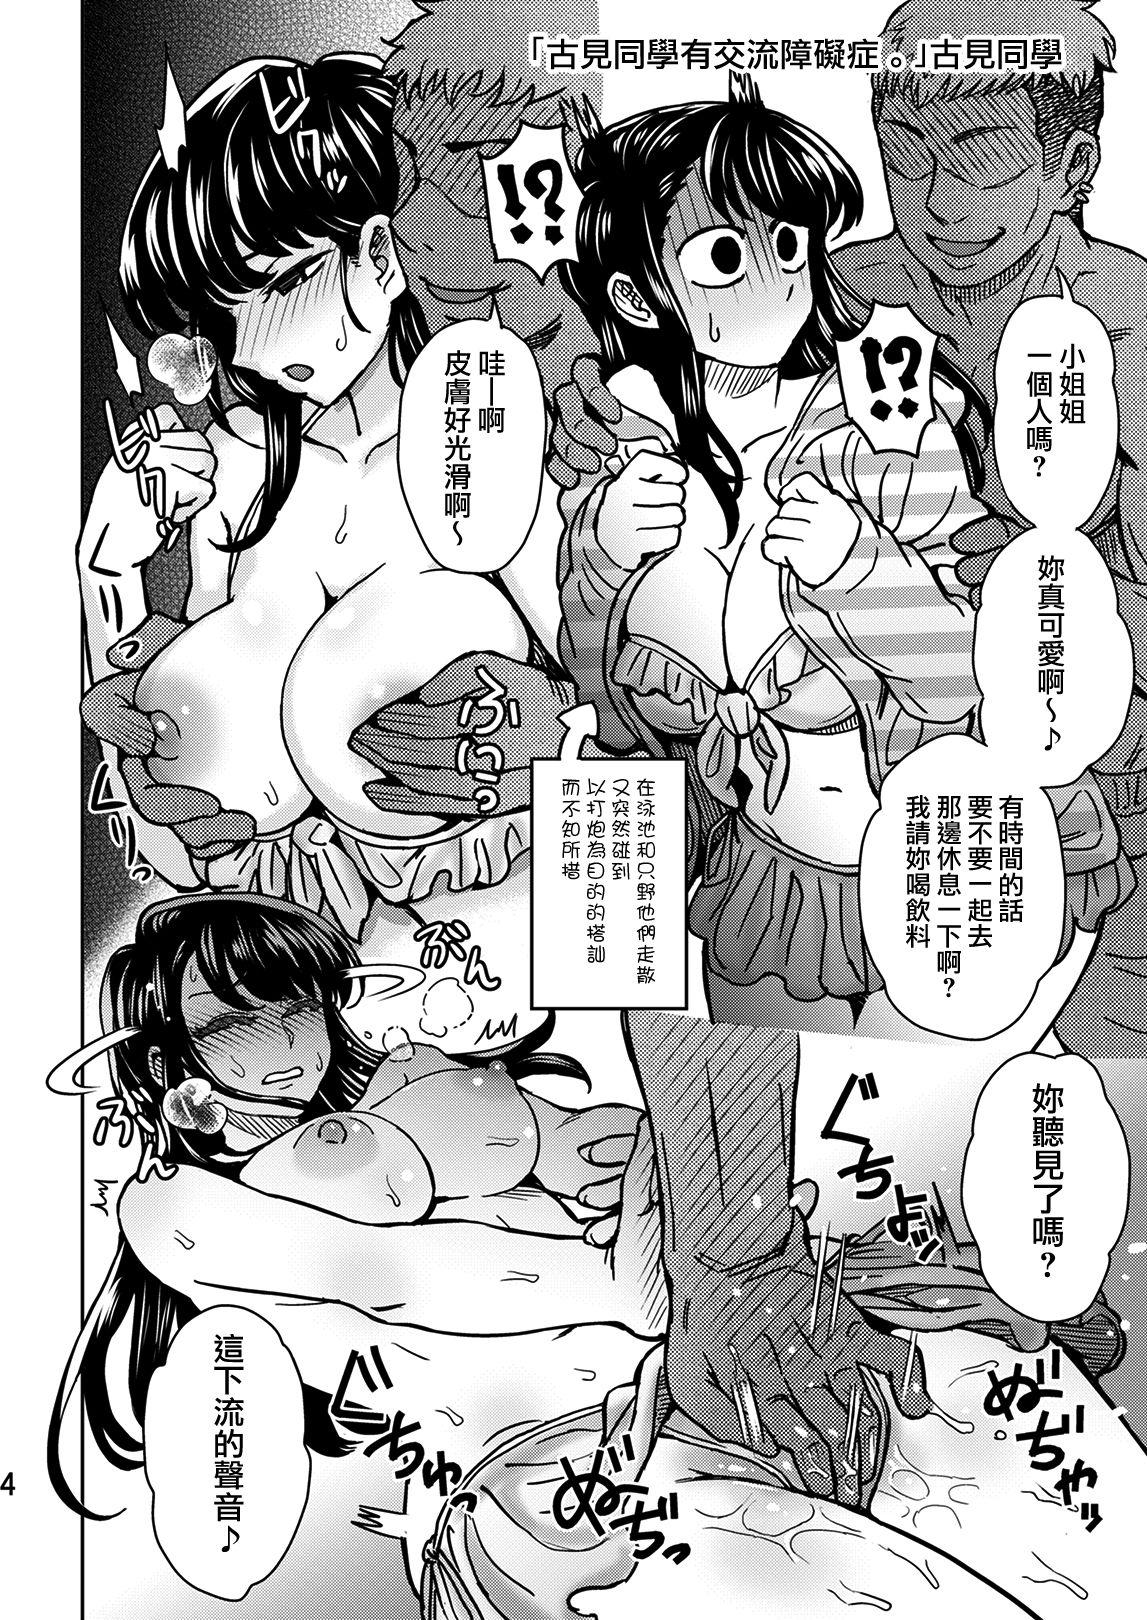 Gay Broken C95 Yorozu NTR Short Manga Shuu - Komi-san wa komyushou desu. Amateur Free Porn - Page 5